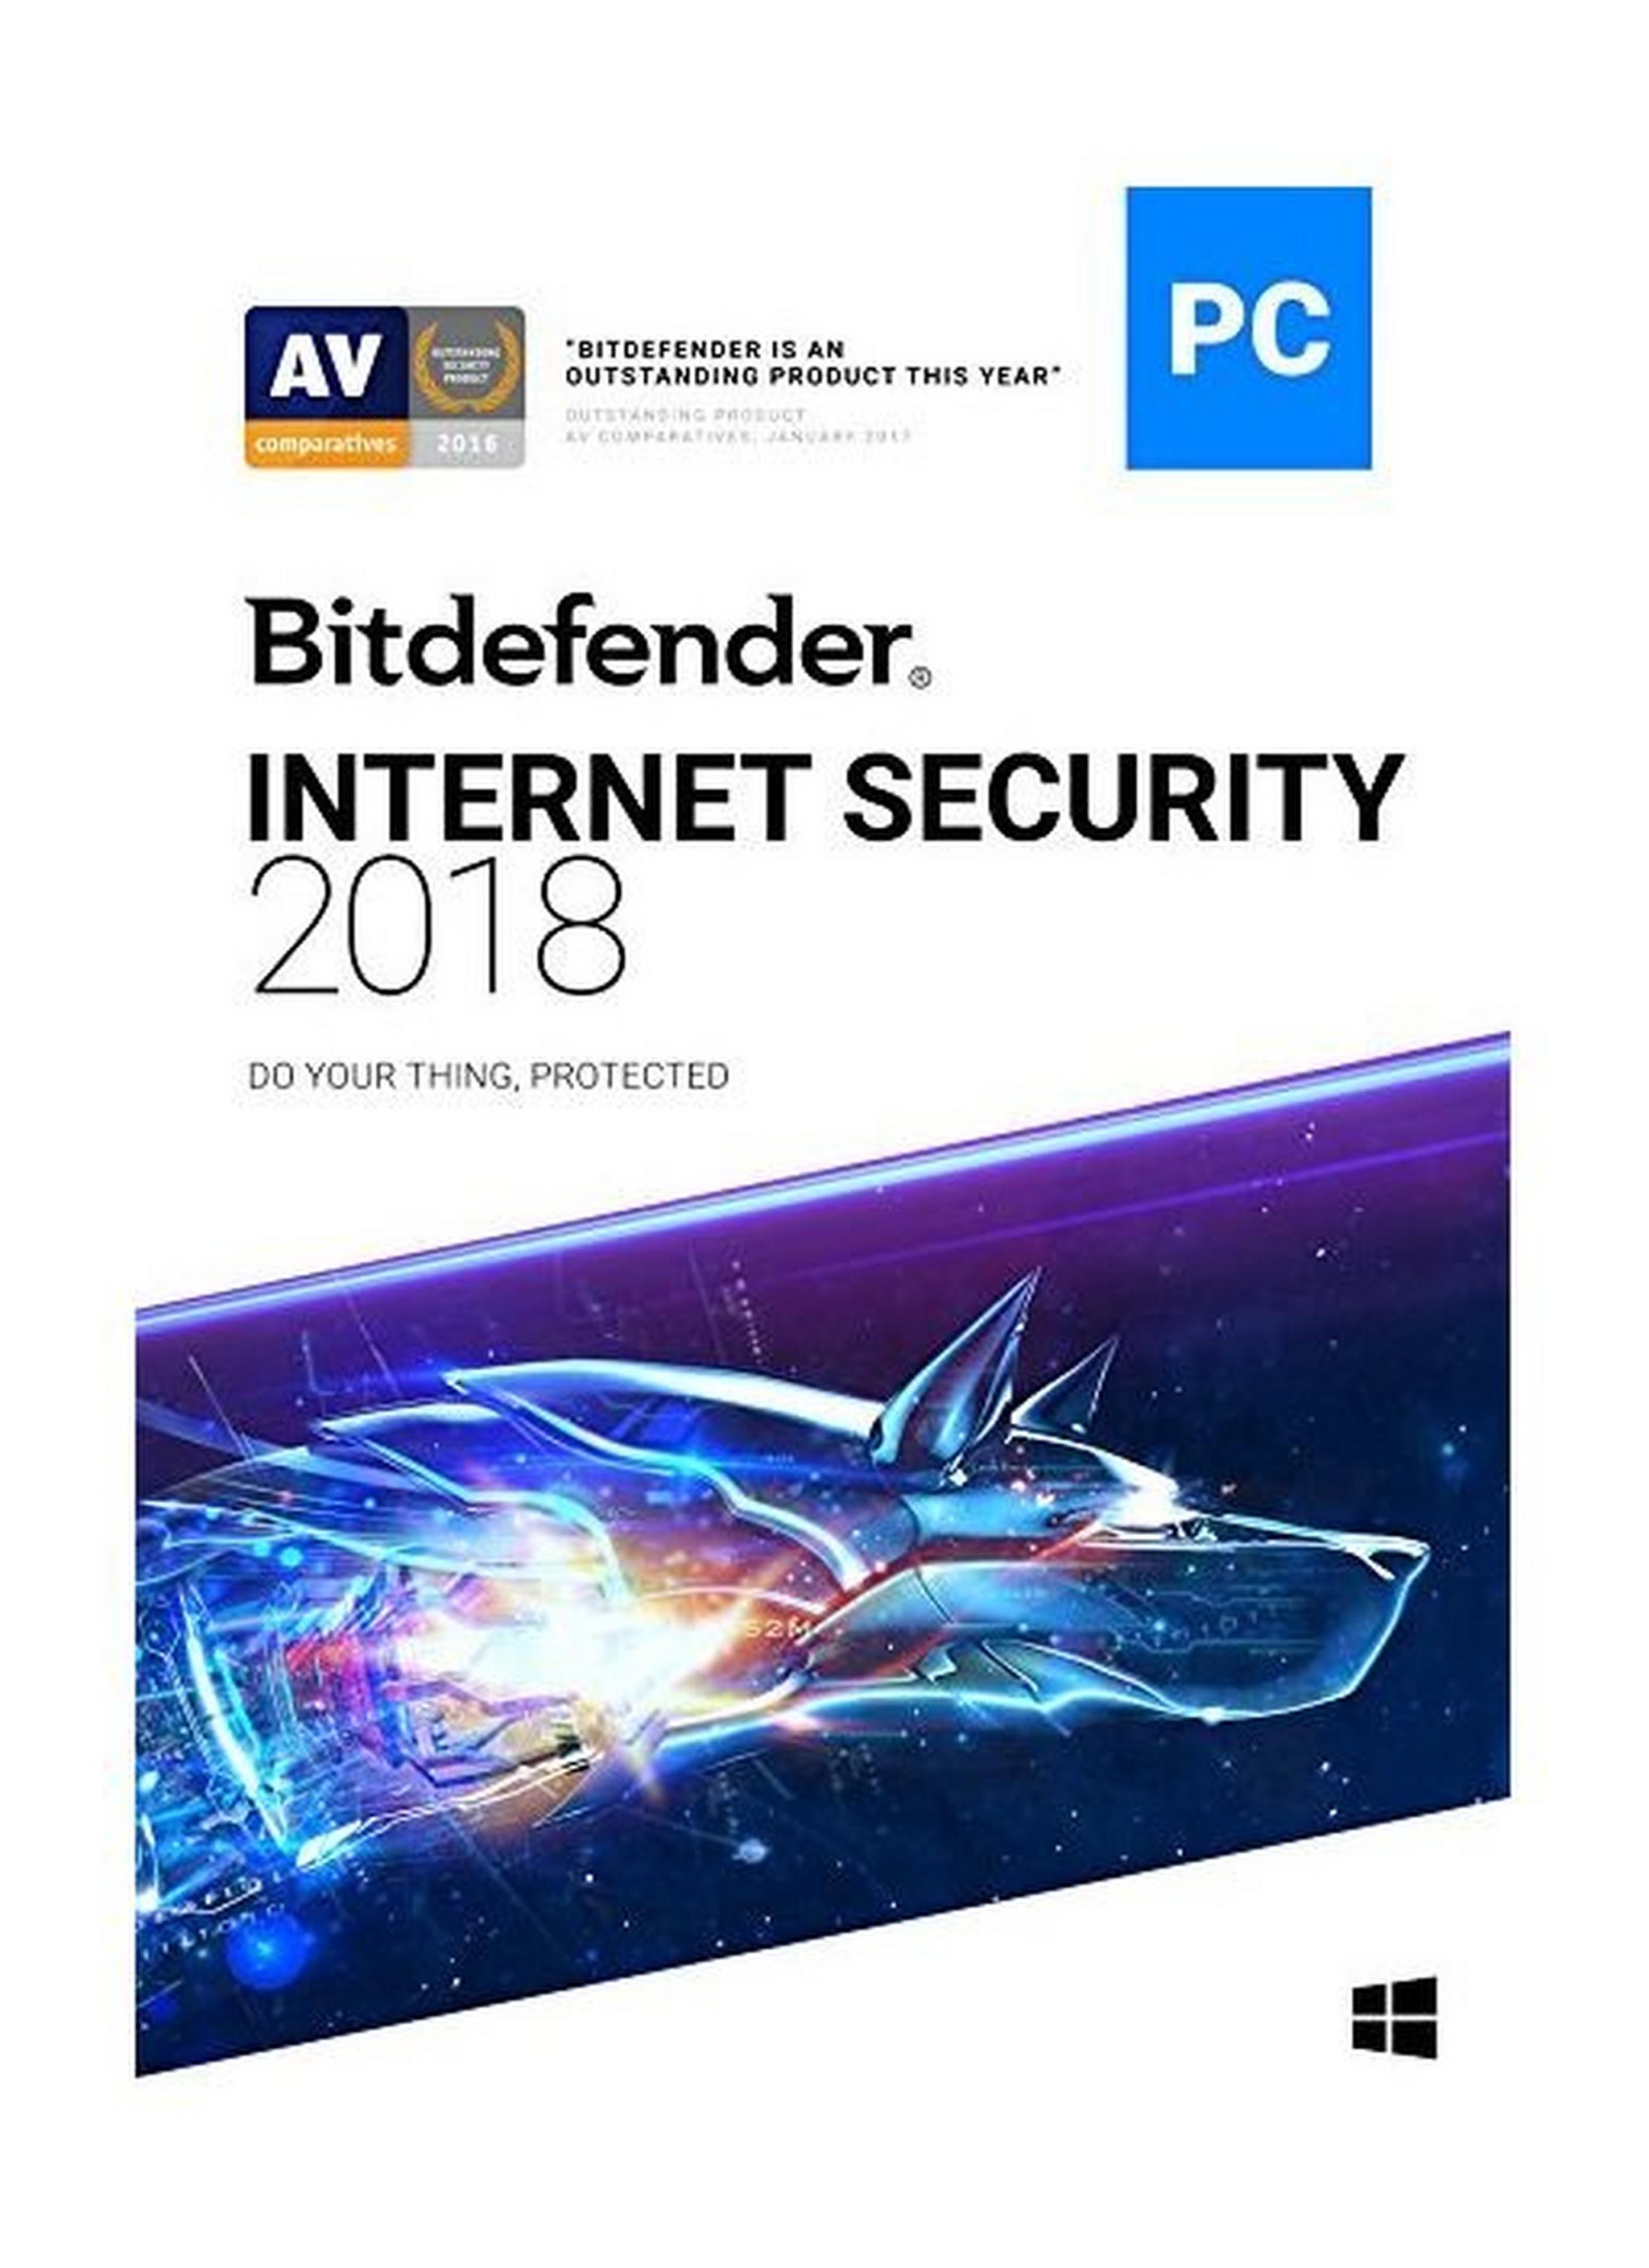 برنامج الحماية من الإنترنت بيت ديفيندر ٢٠١٨ - ٣ مستخدمين